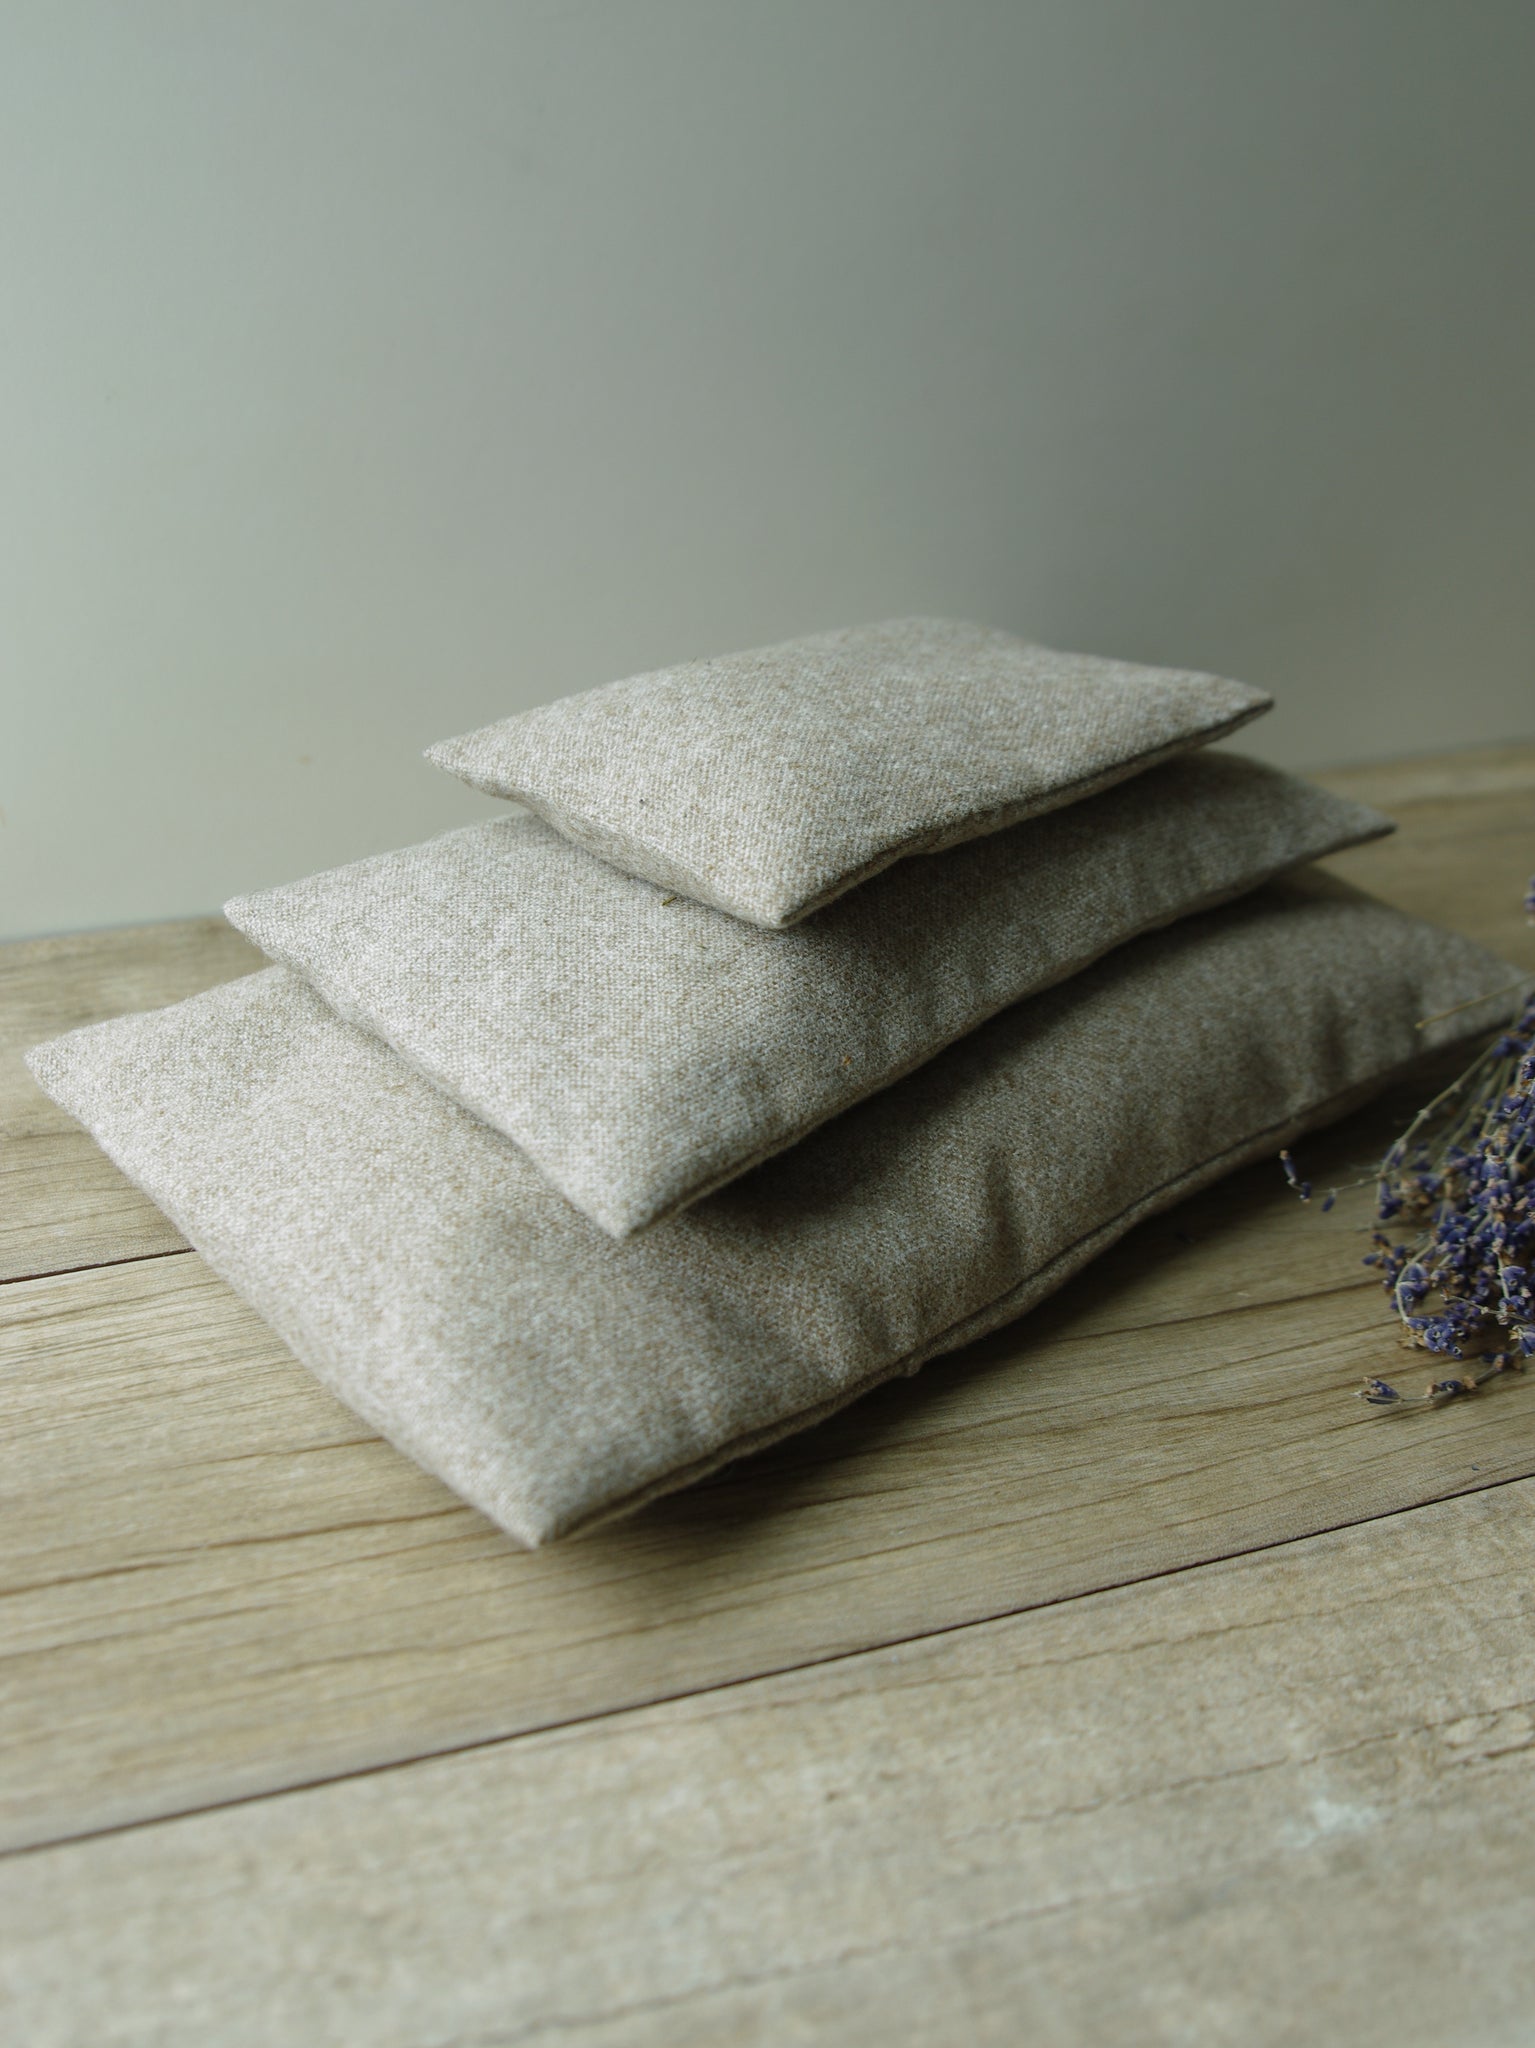 French Lavender Sachet—Tan Wool